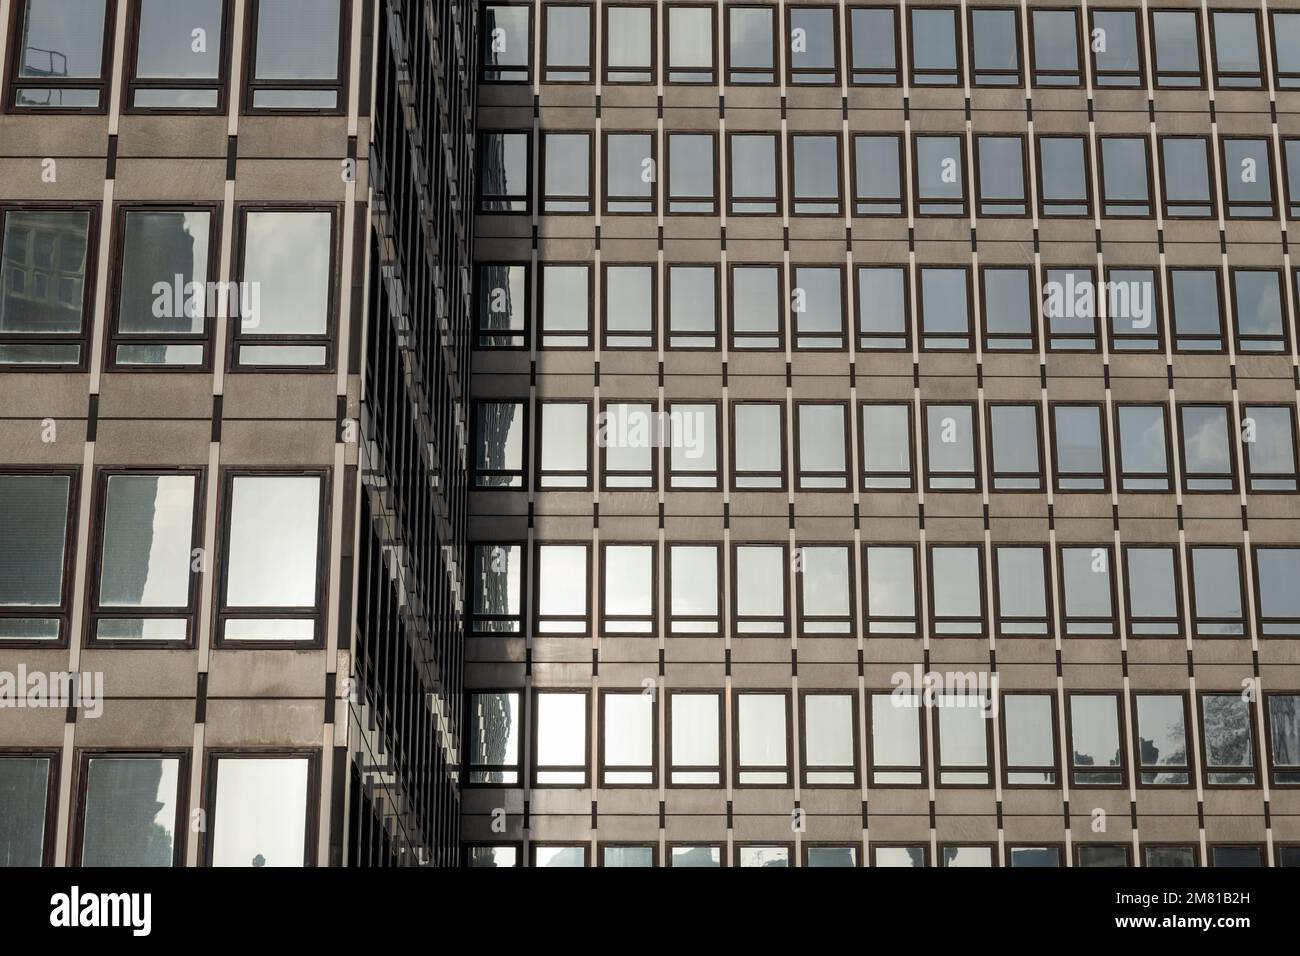 Dettagli architettonici di un edificio moderno con finestre in vetro riflettente. Foto Stock